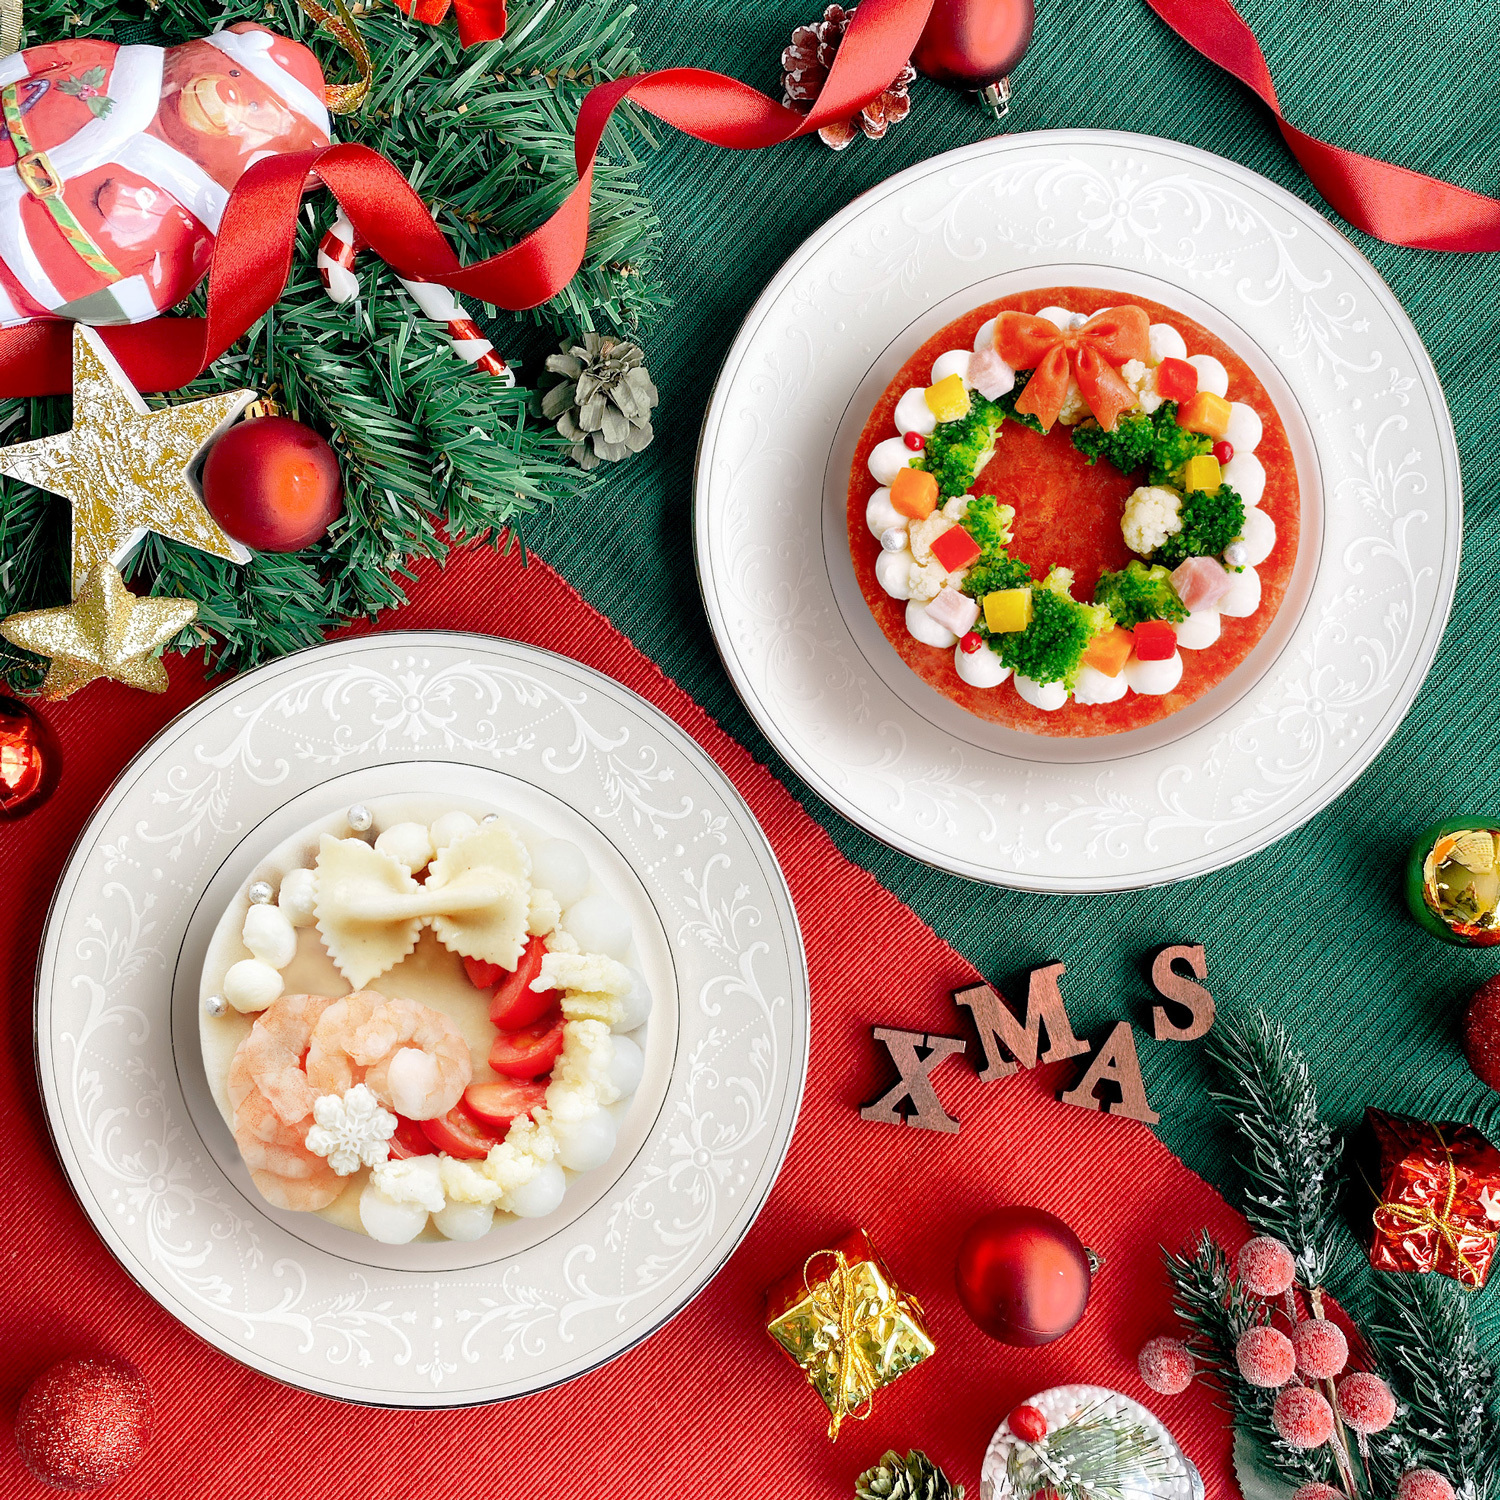 Decopa 冬季限定商品 新発売 冷凍の概念を覆す クリスマスにイチオシの可愛いパスタが登場 株式会社プレックスのプレスリリース